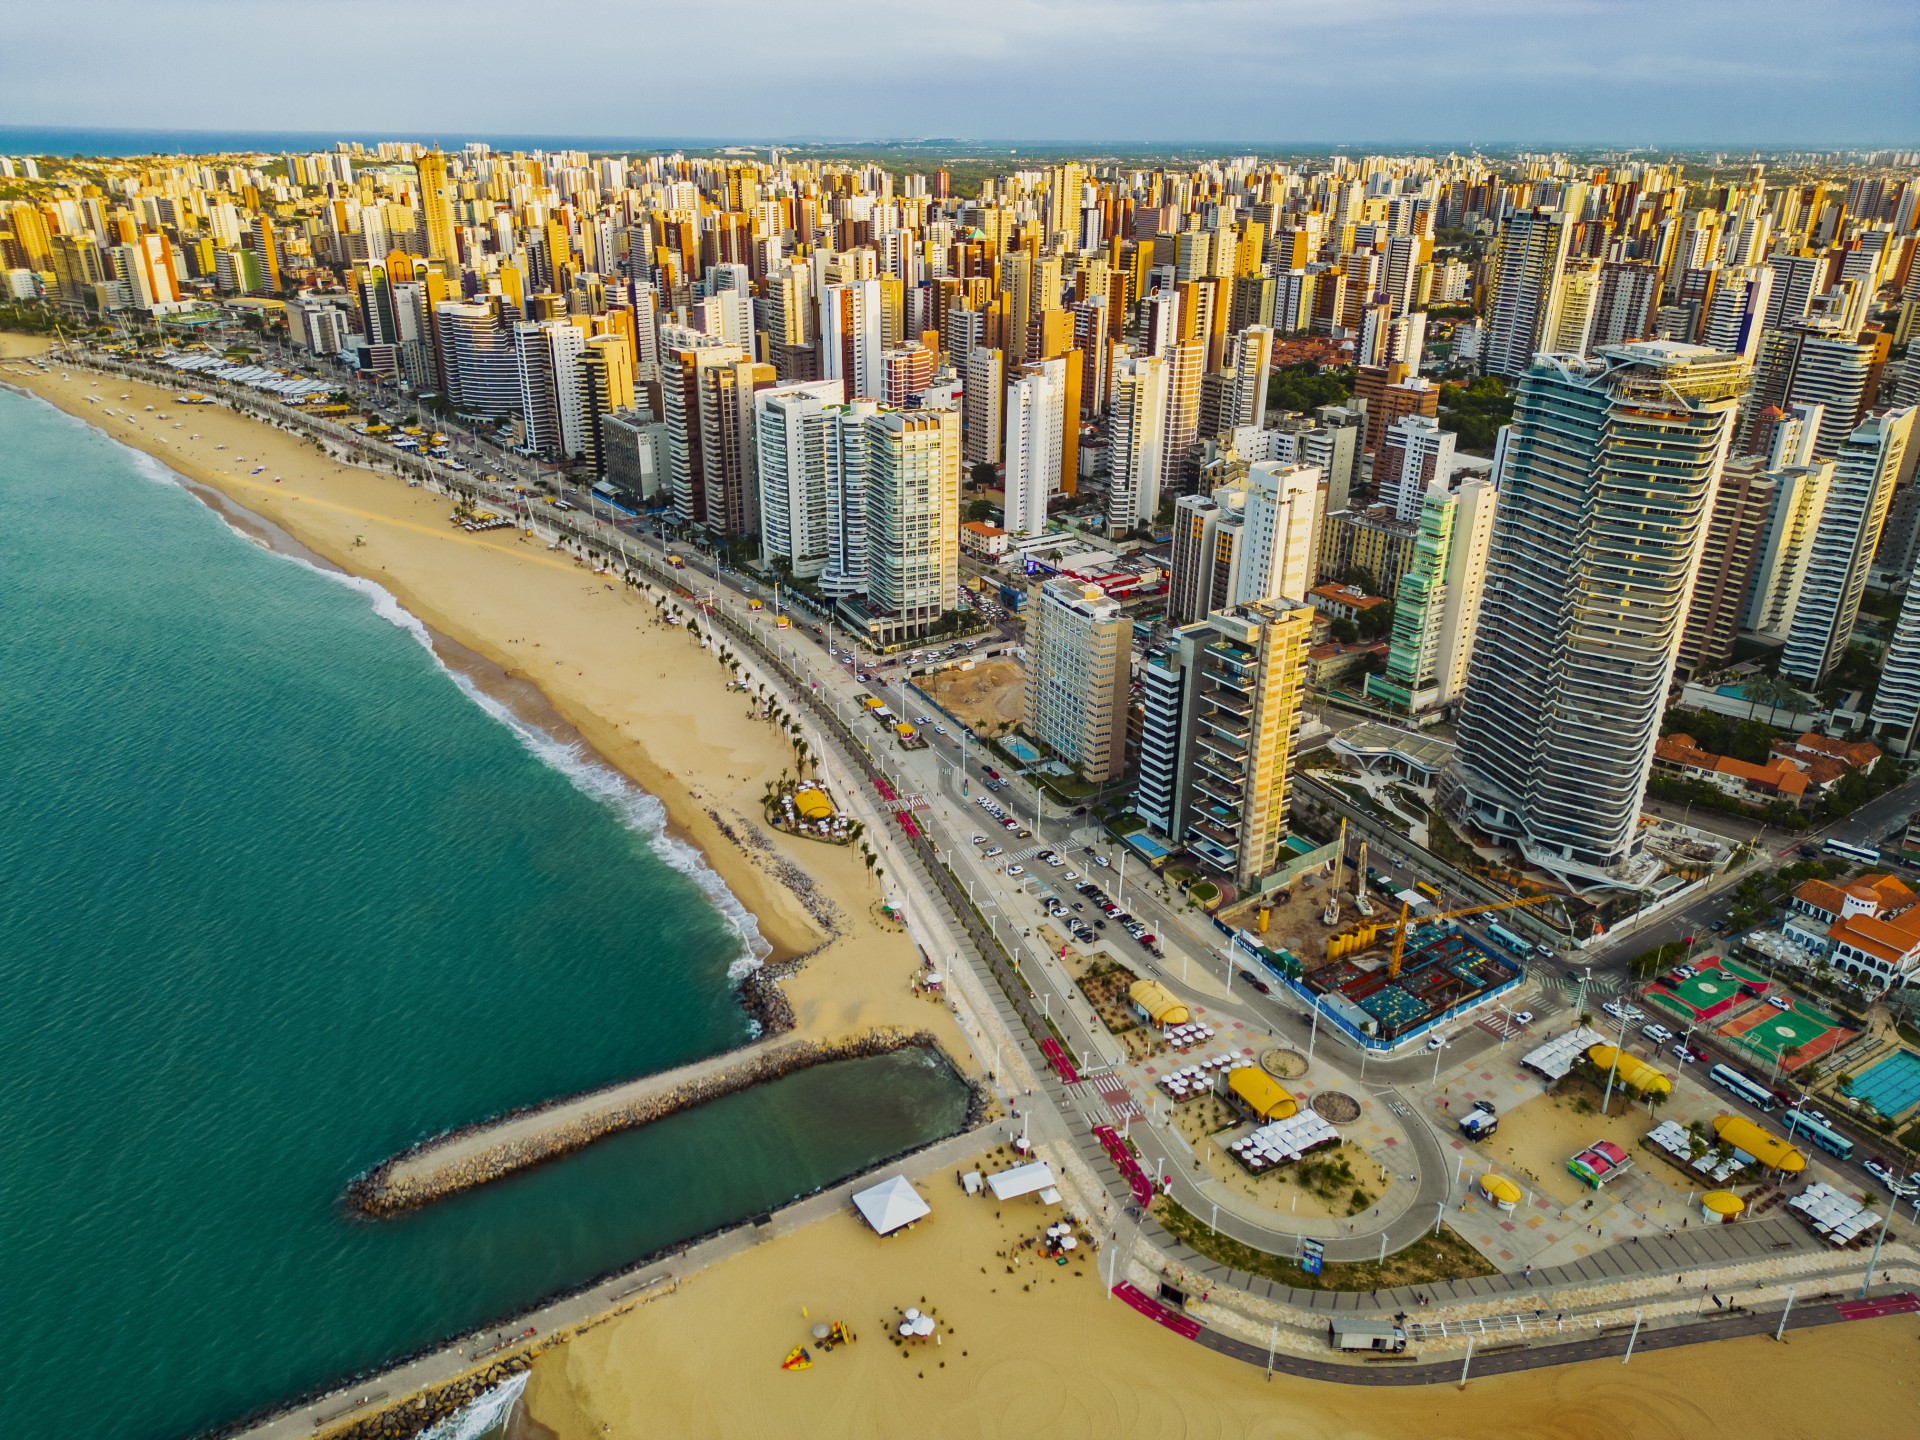 ￼Entorno da Av. Beira Mar tem oferecido maior dificuldade para instalação de torres com a nova tecnologia (Foto: FCO FONTENELE)